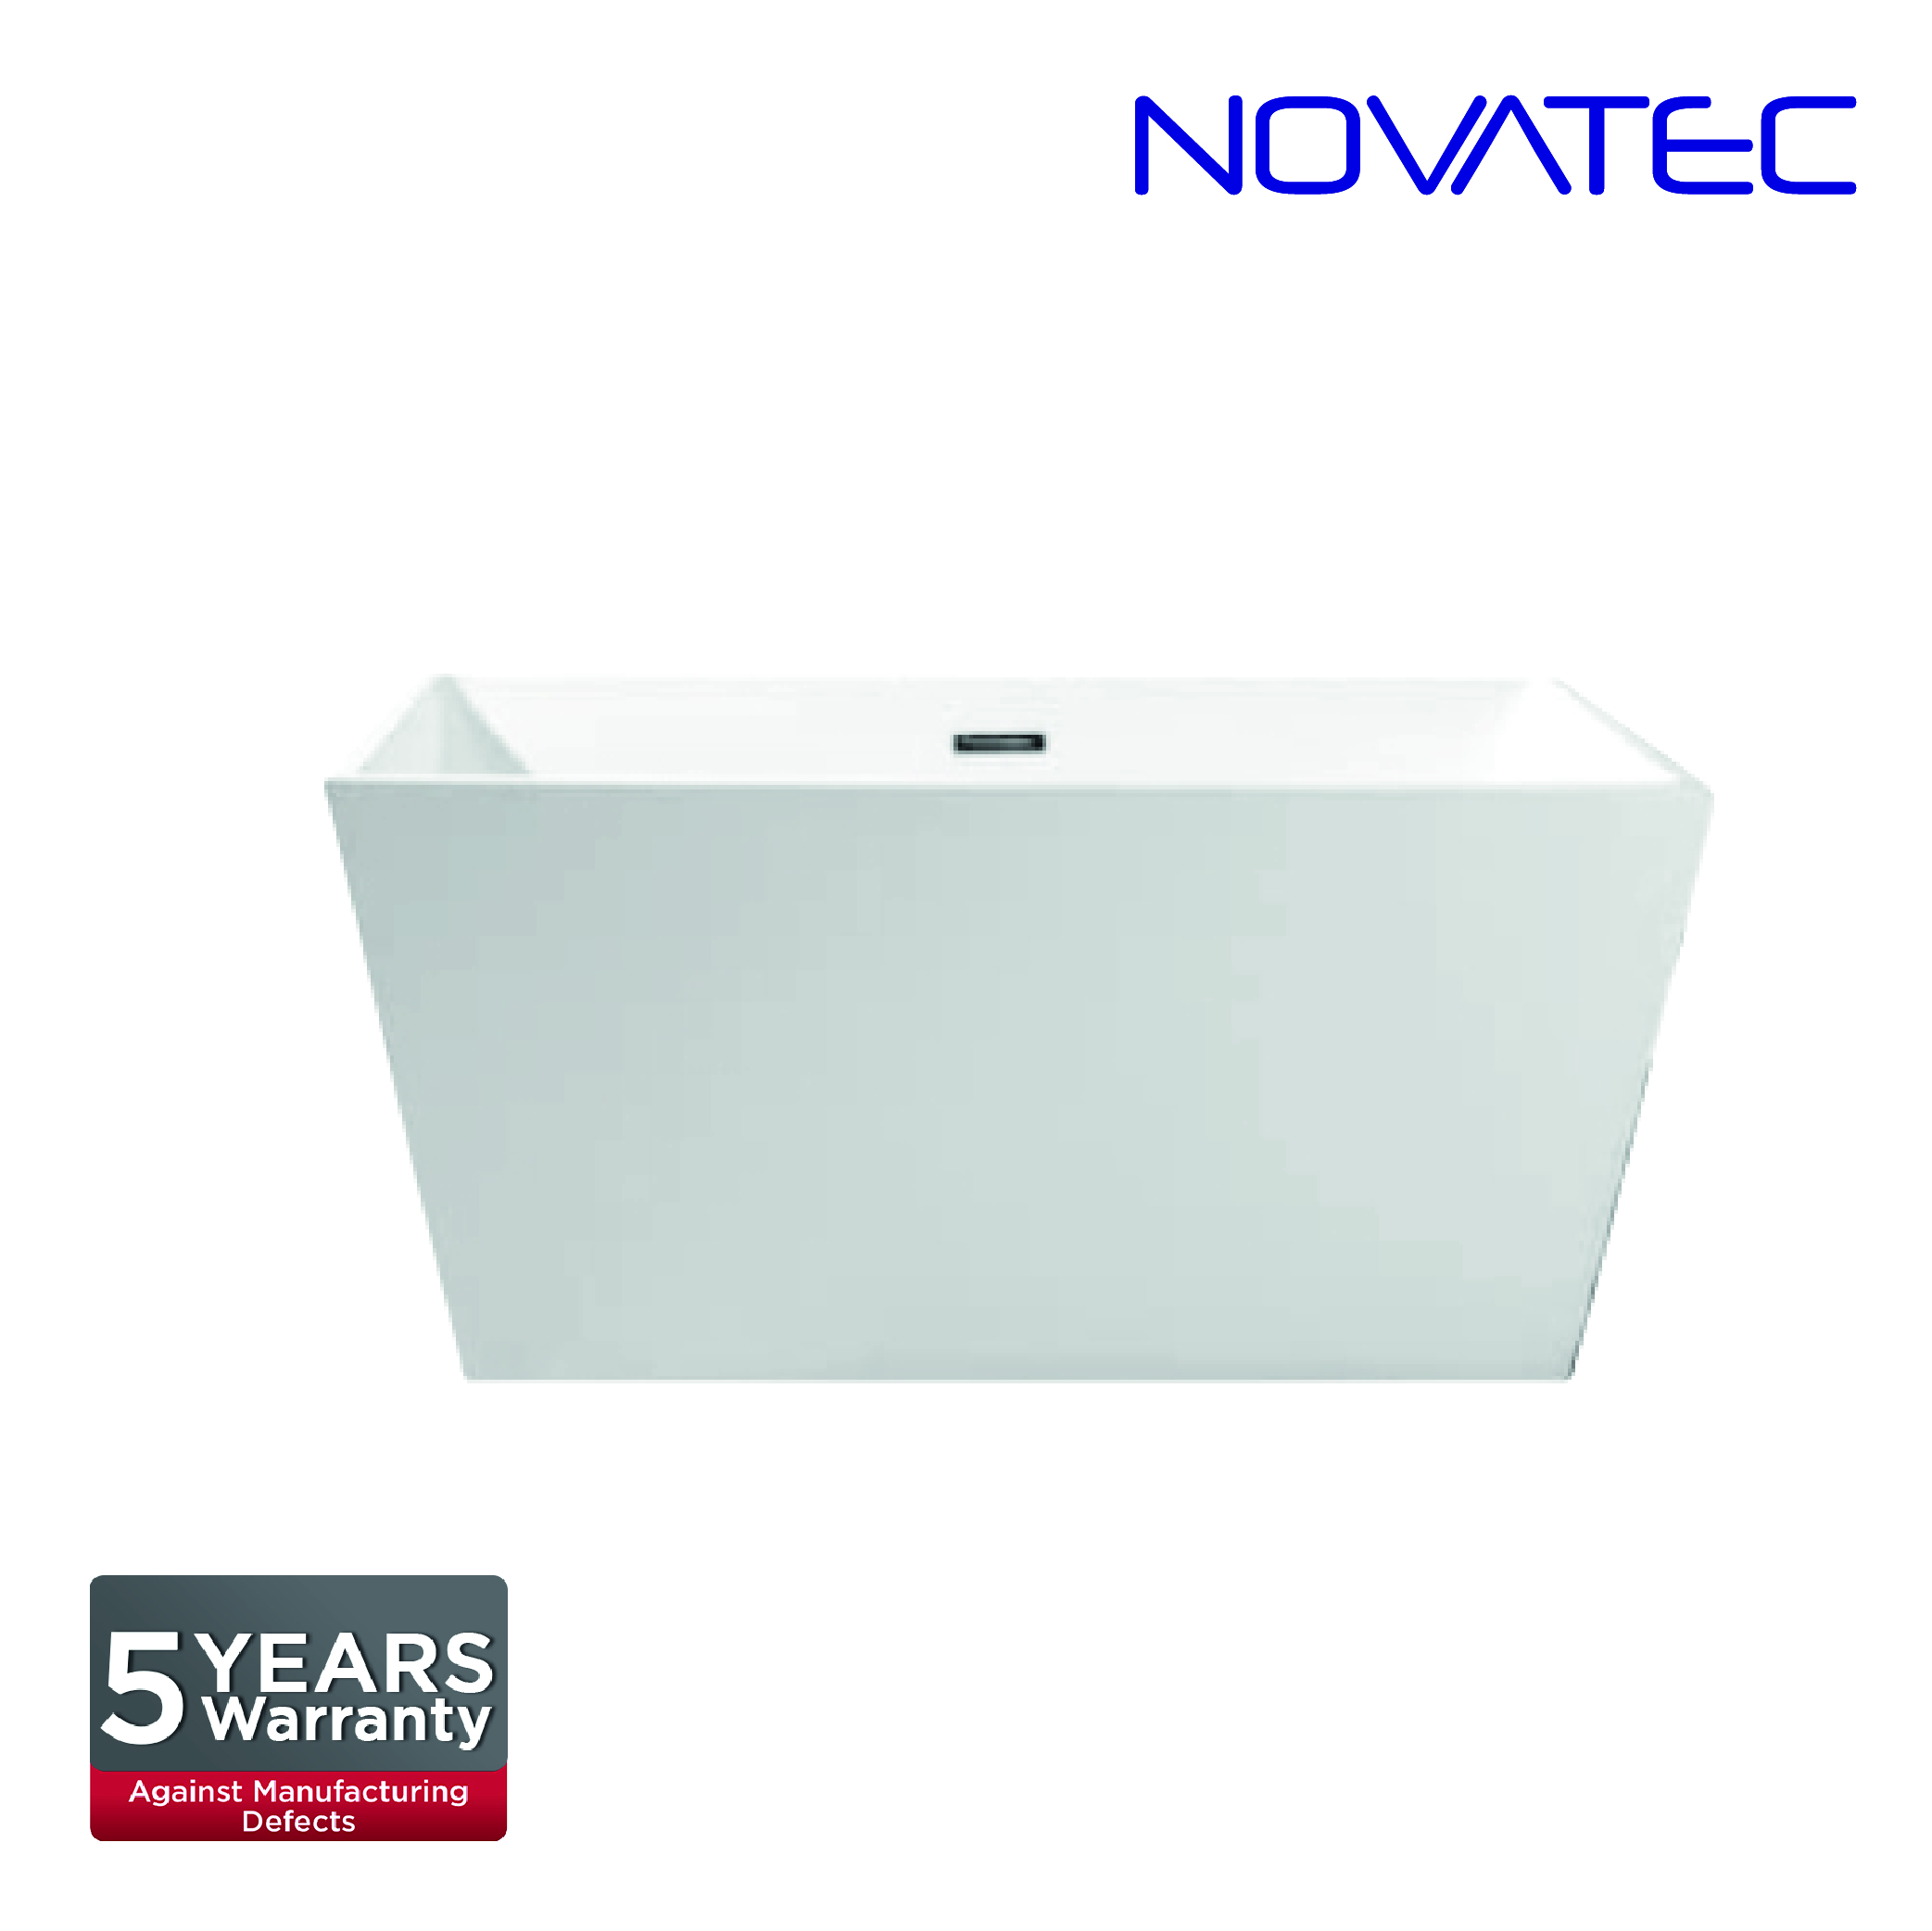 Novatec SW Catania Bath Tub BT 160016C